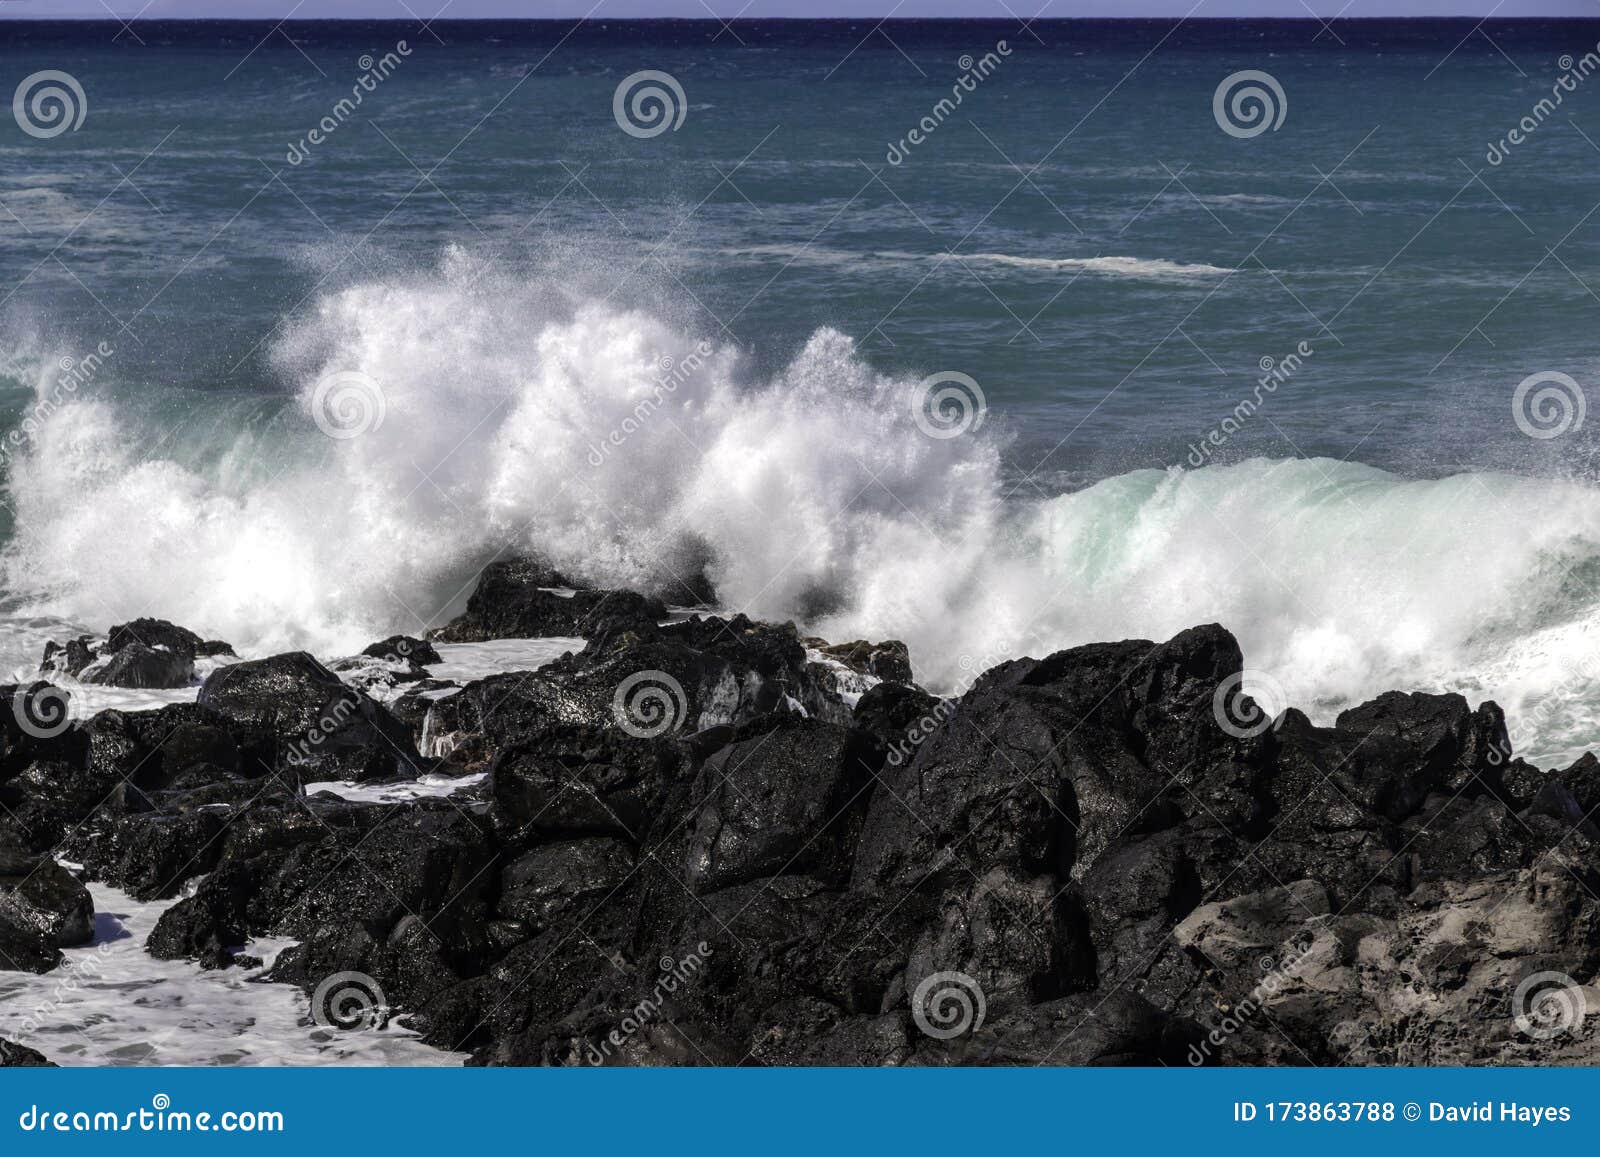 Wave Breaking On Black Volcanic Rocks Hawaiian Coast Blue Green